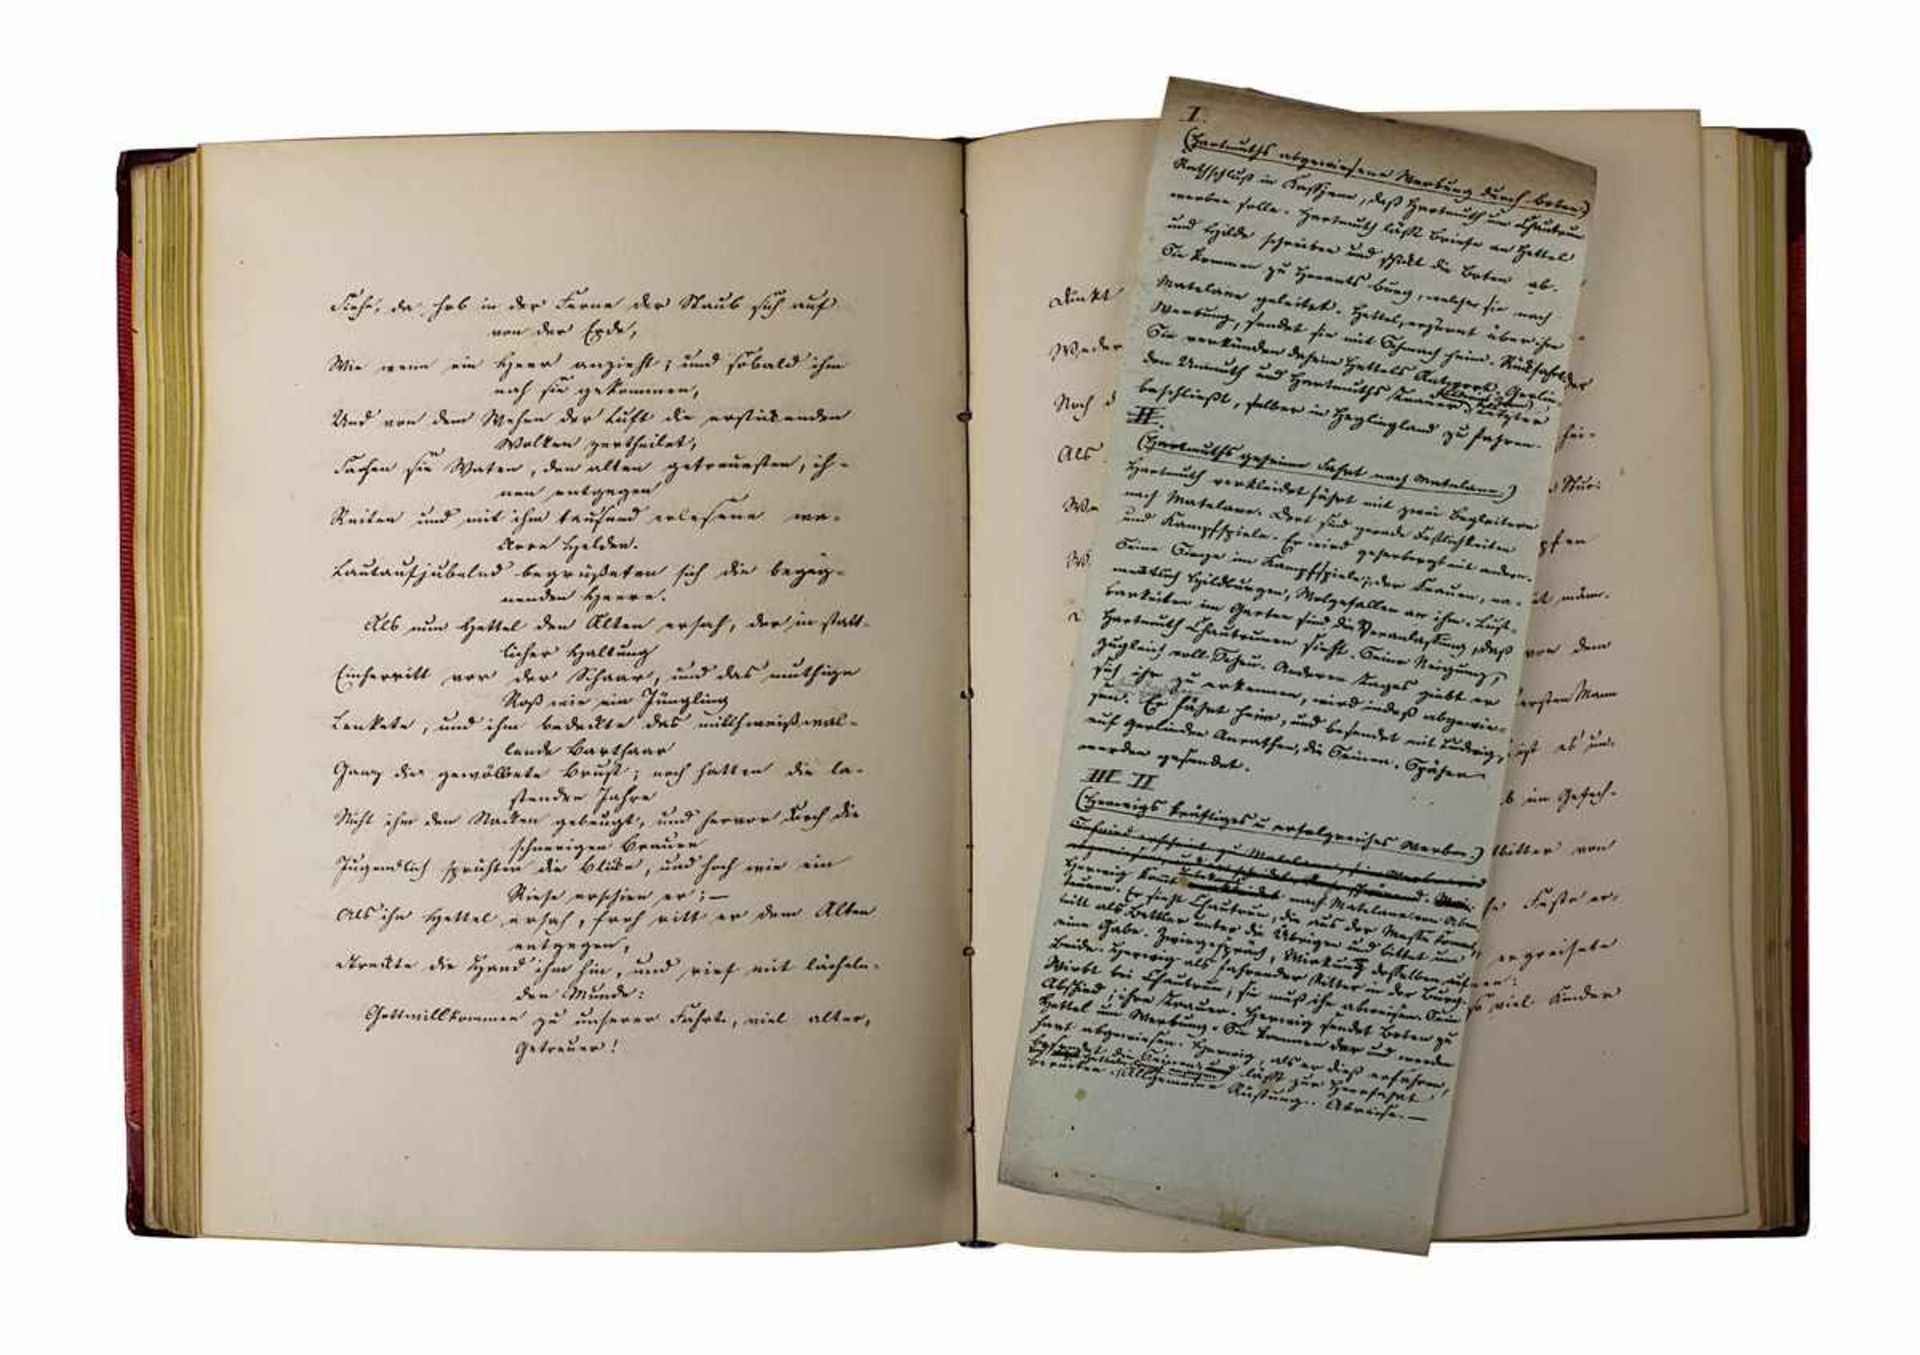 2 handgeschriebene Bücher, deutsch 19. Jh., das eine betitelt "Die Auburger", das zweite betitelt "